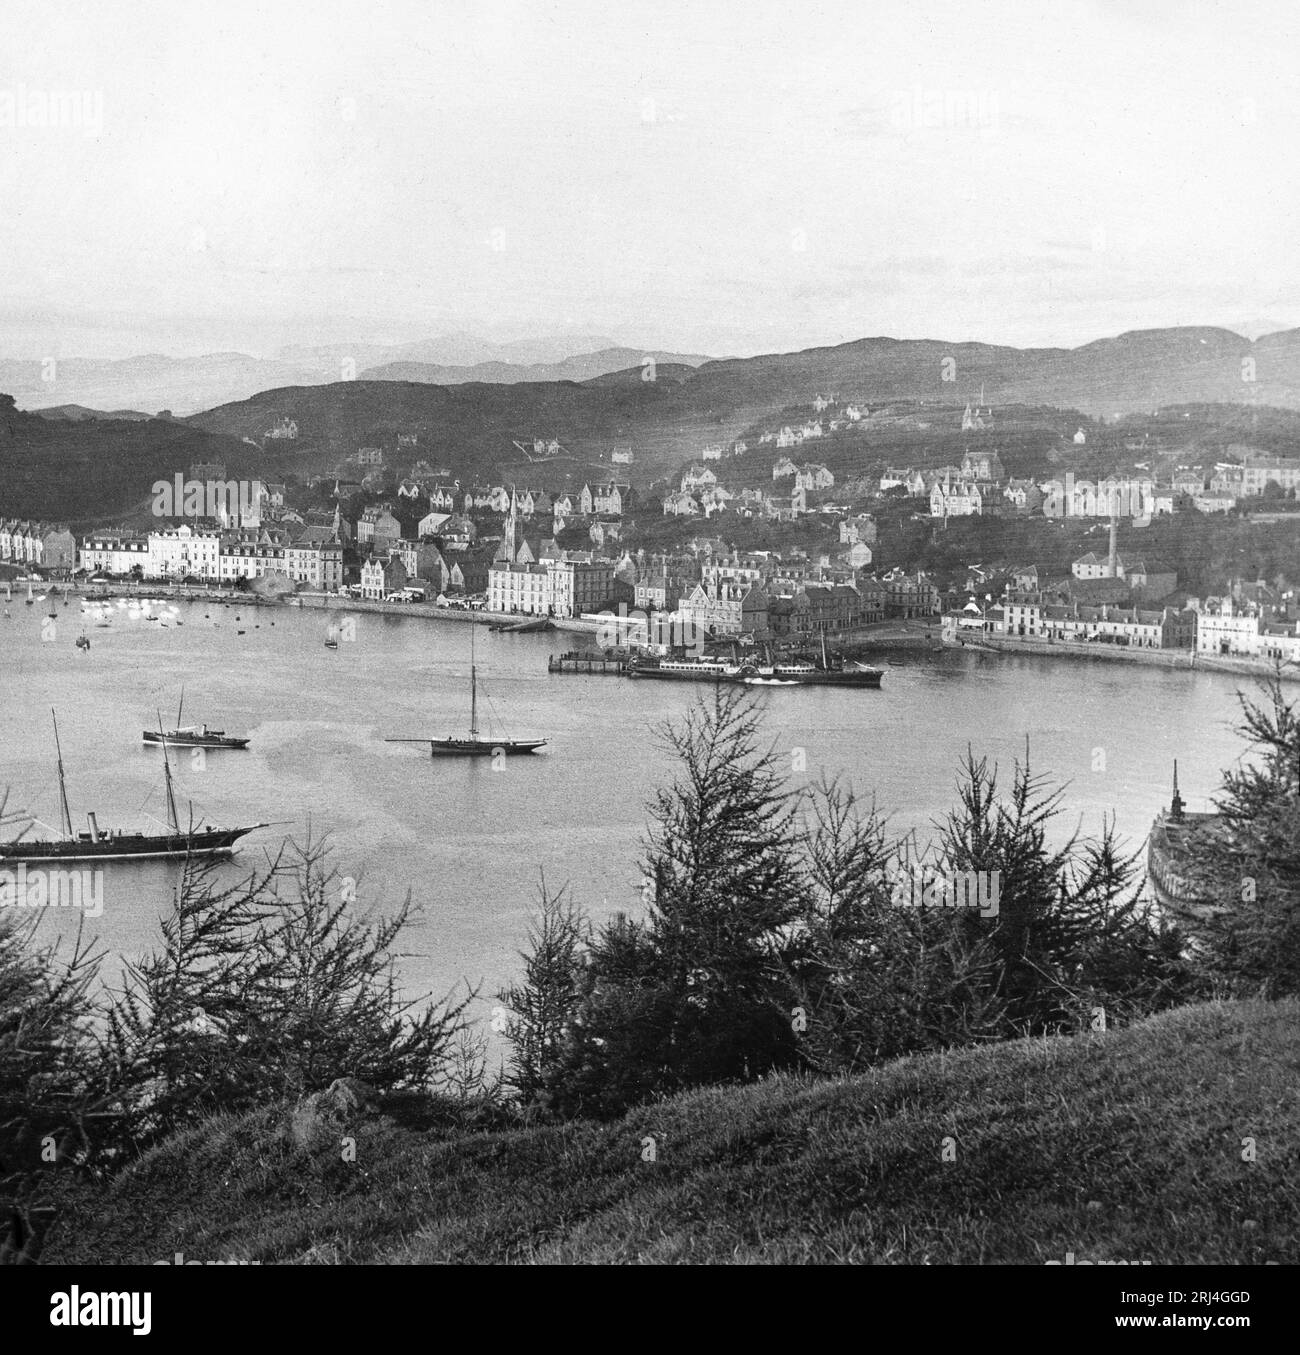 Una fotografia in bianco e nero del tardo XIX secolo che mostra Oban in Scozia, con molte navi a vela e a vapore. Foto Stock